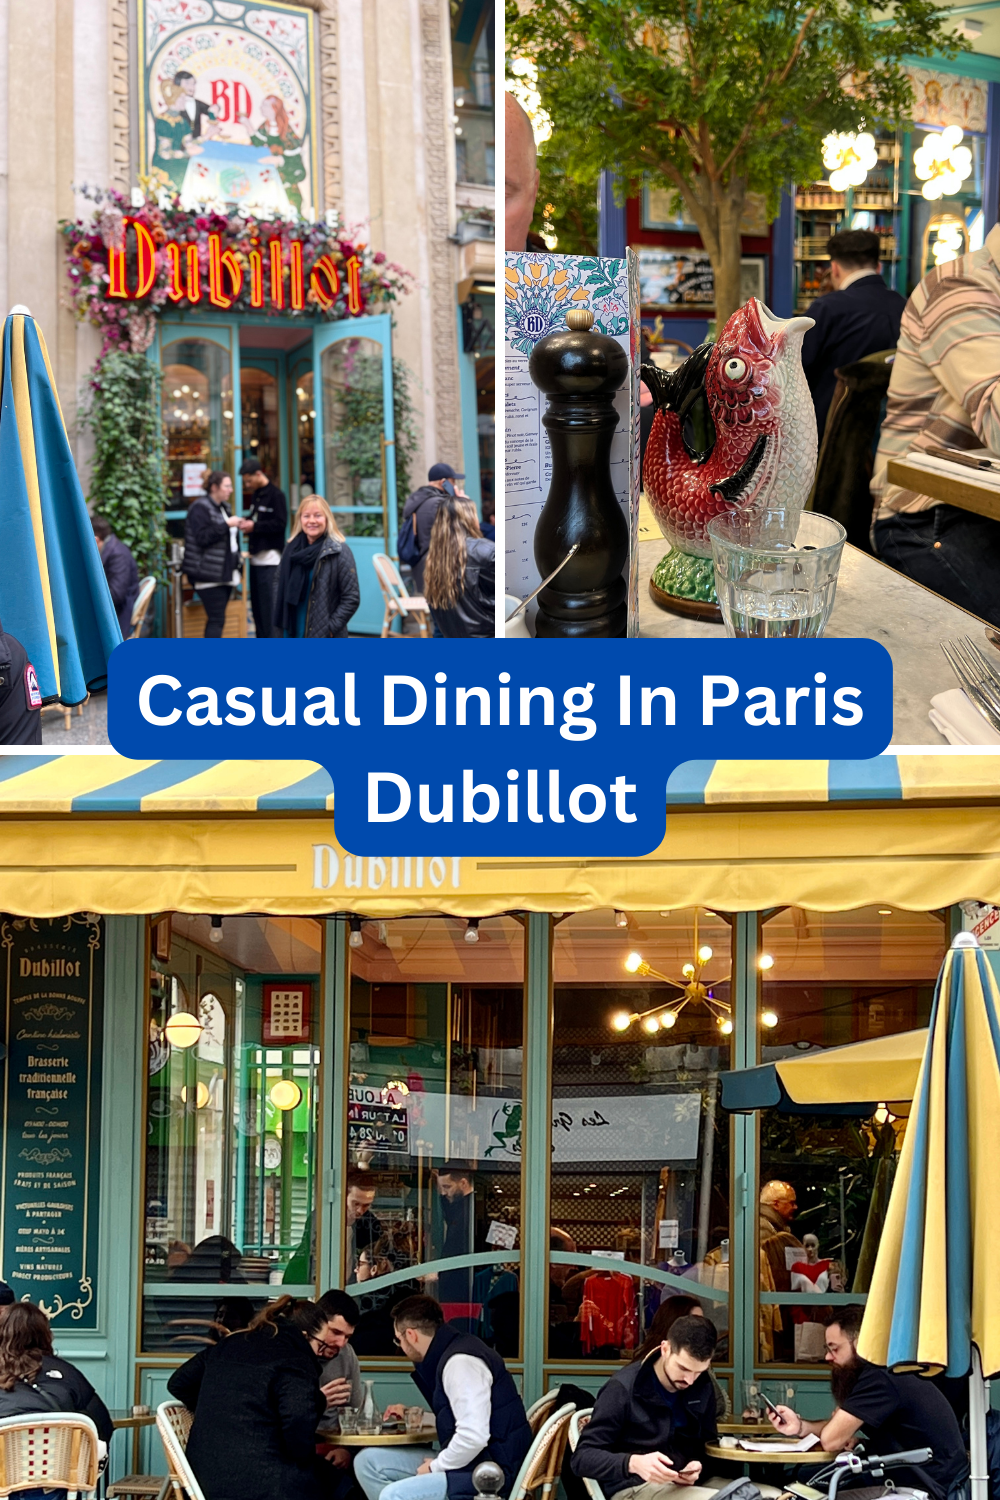 Dubillot restaurant in Paris